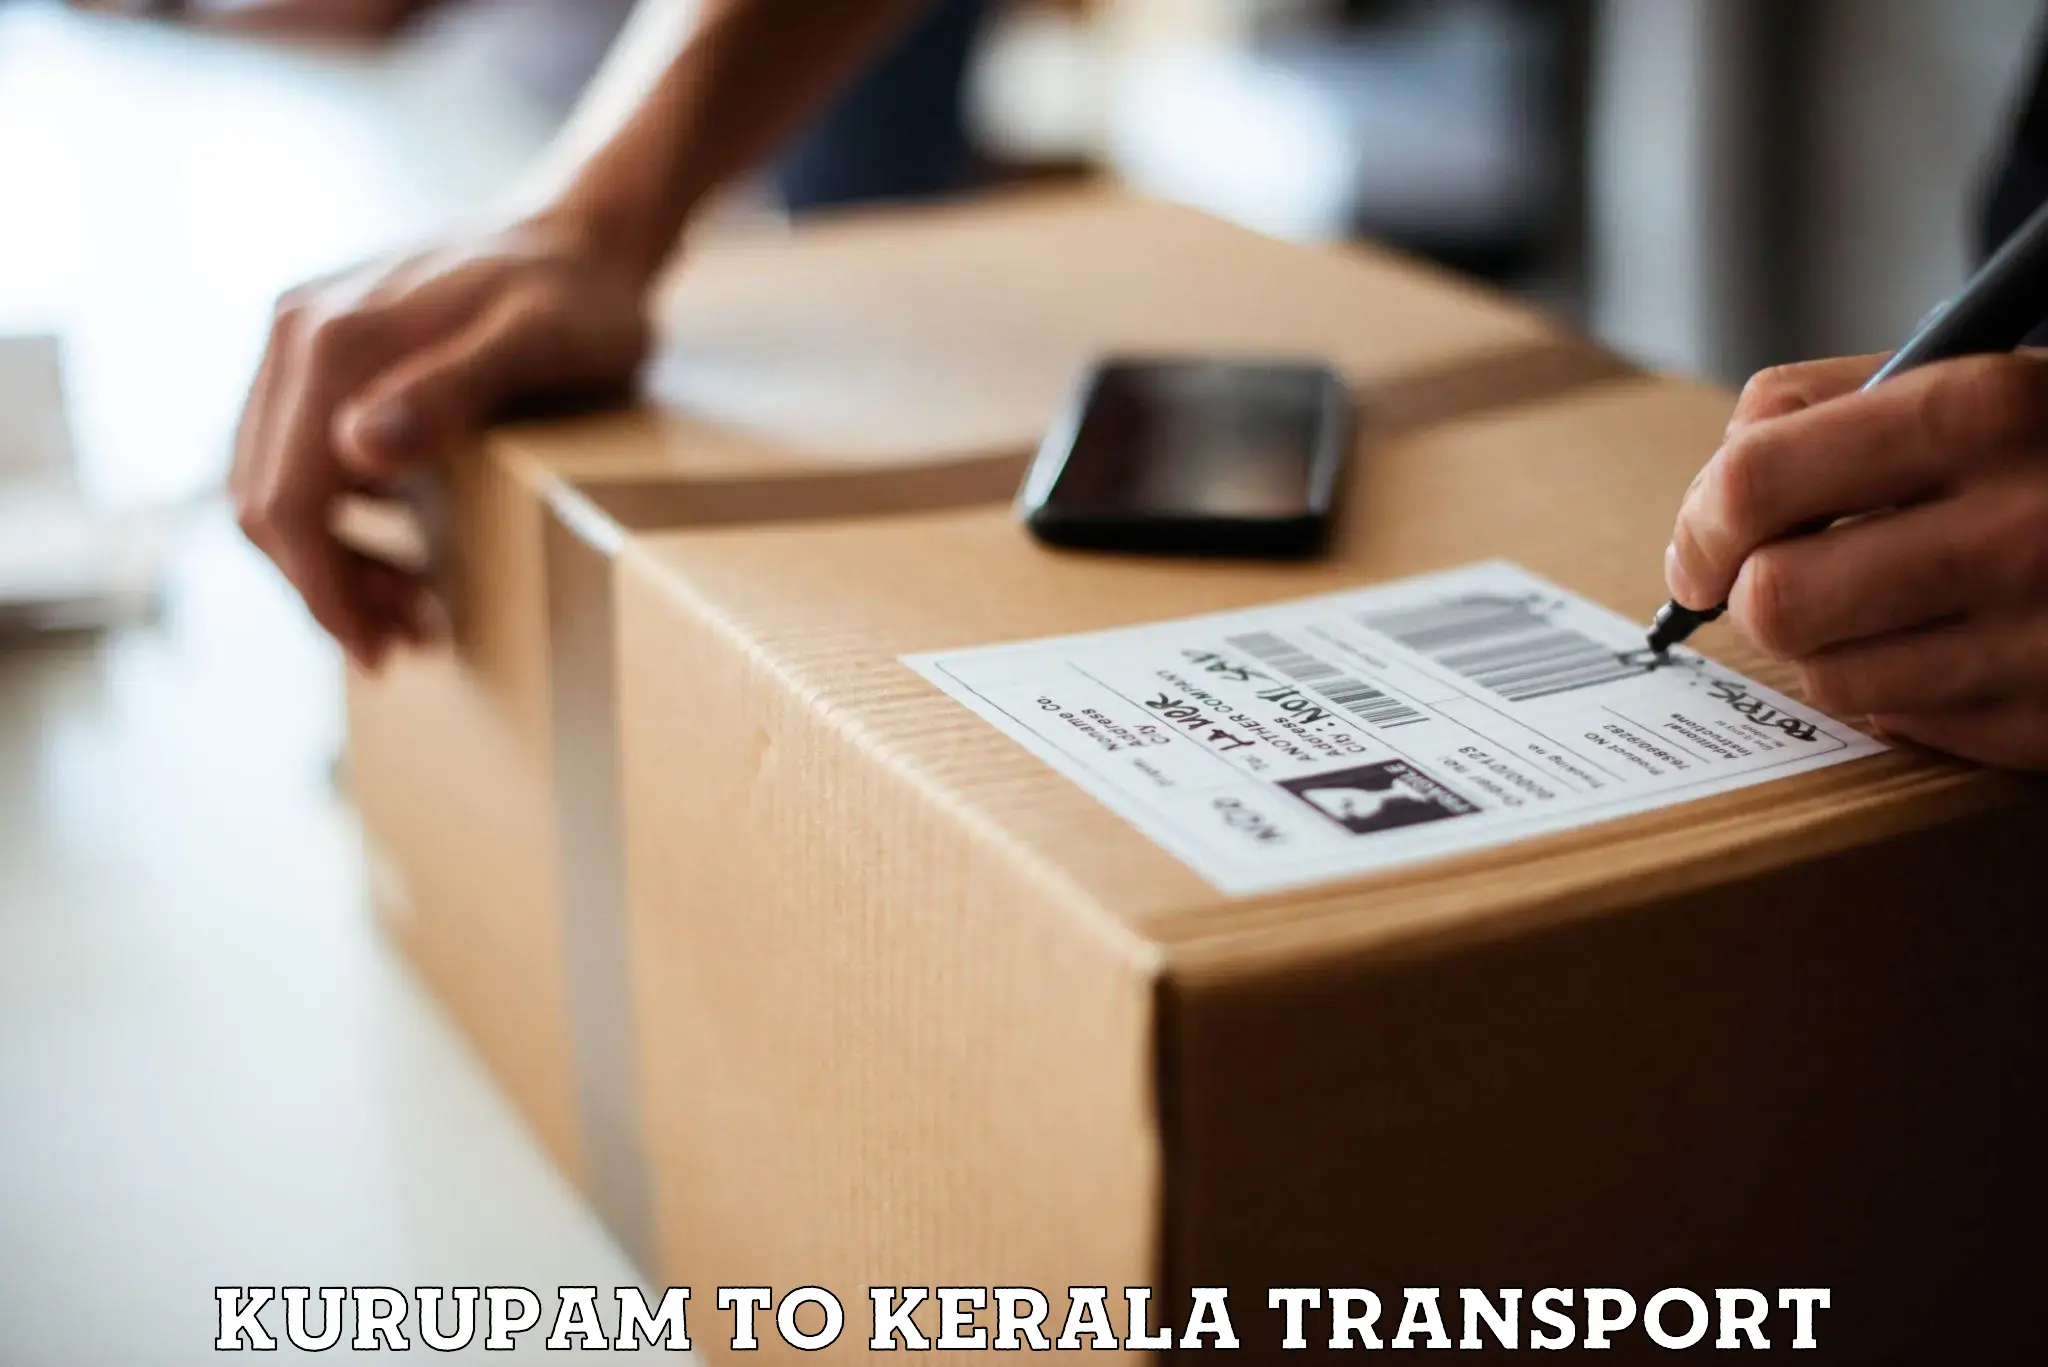 Transport in sharing Kurupam to Ottapalam